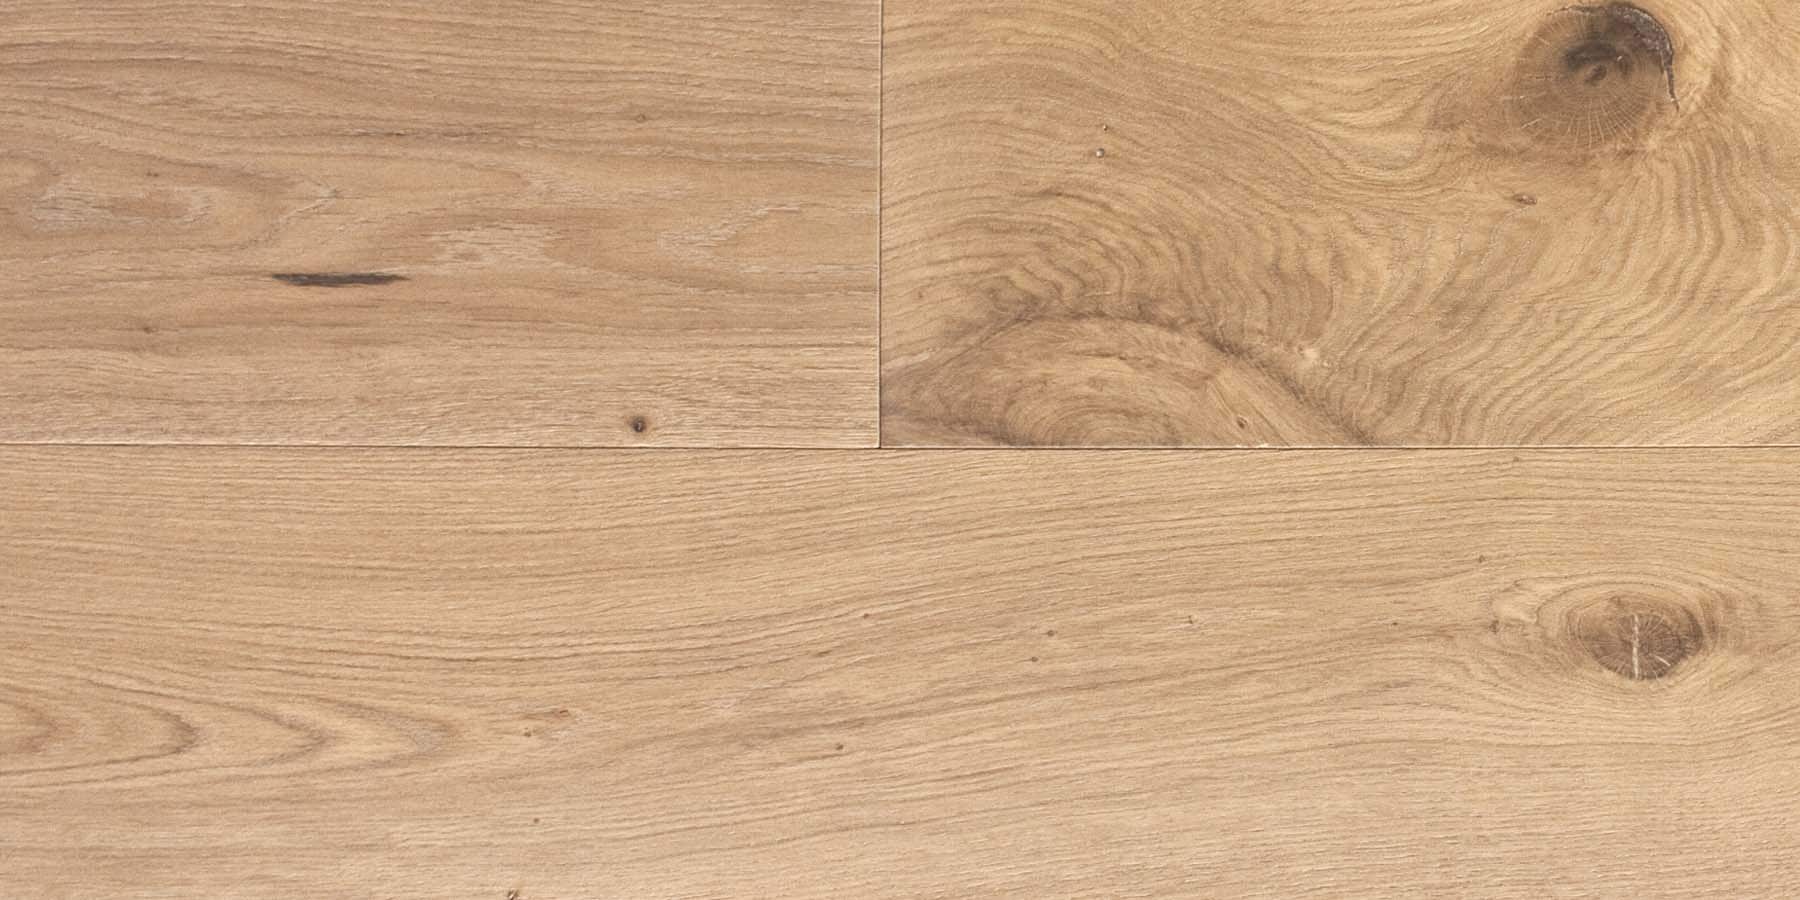 Bespoke Marble Istoria Wood Floors By, Jordan Hardwood Flooring